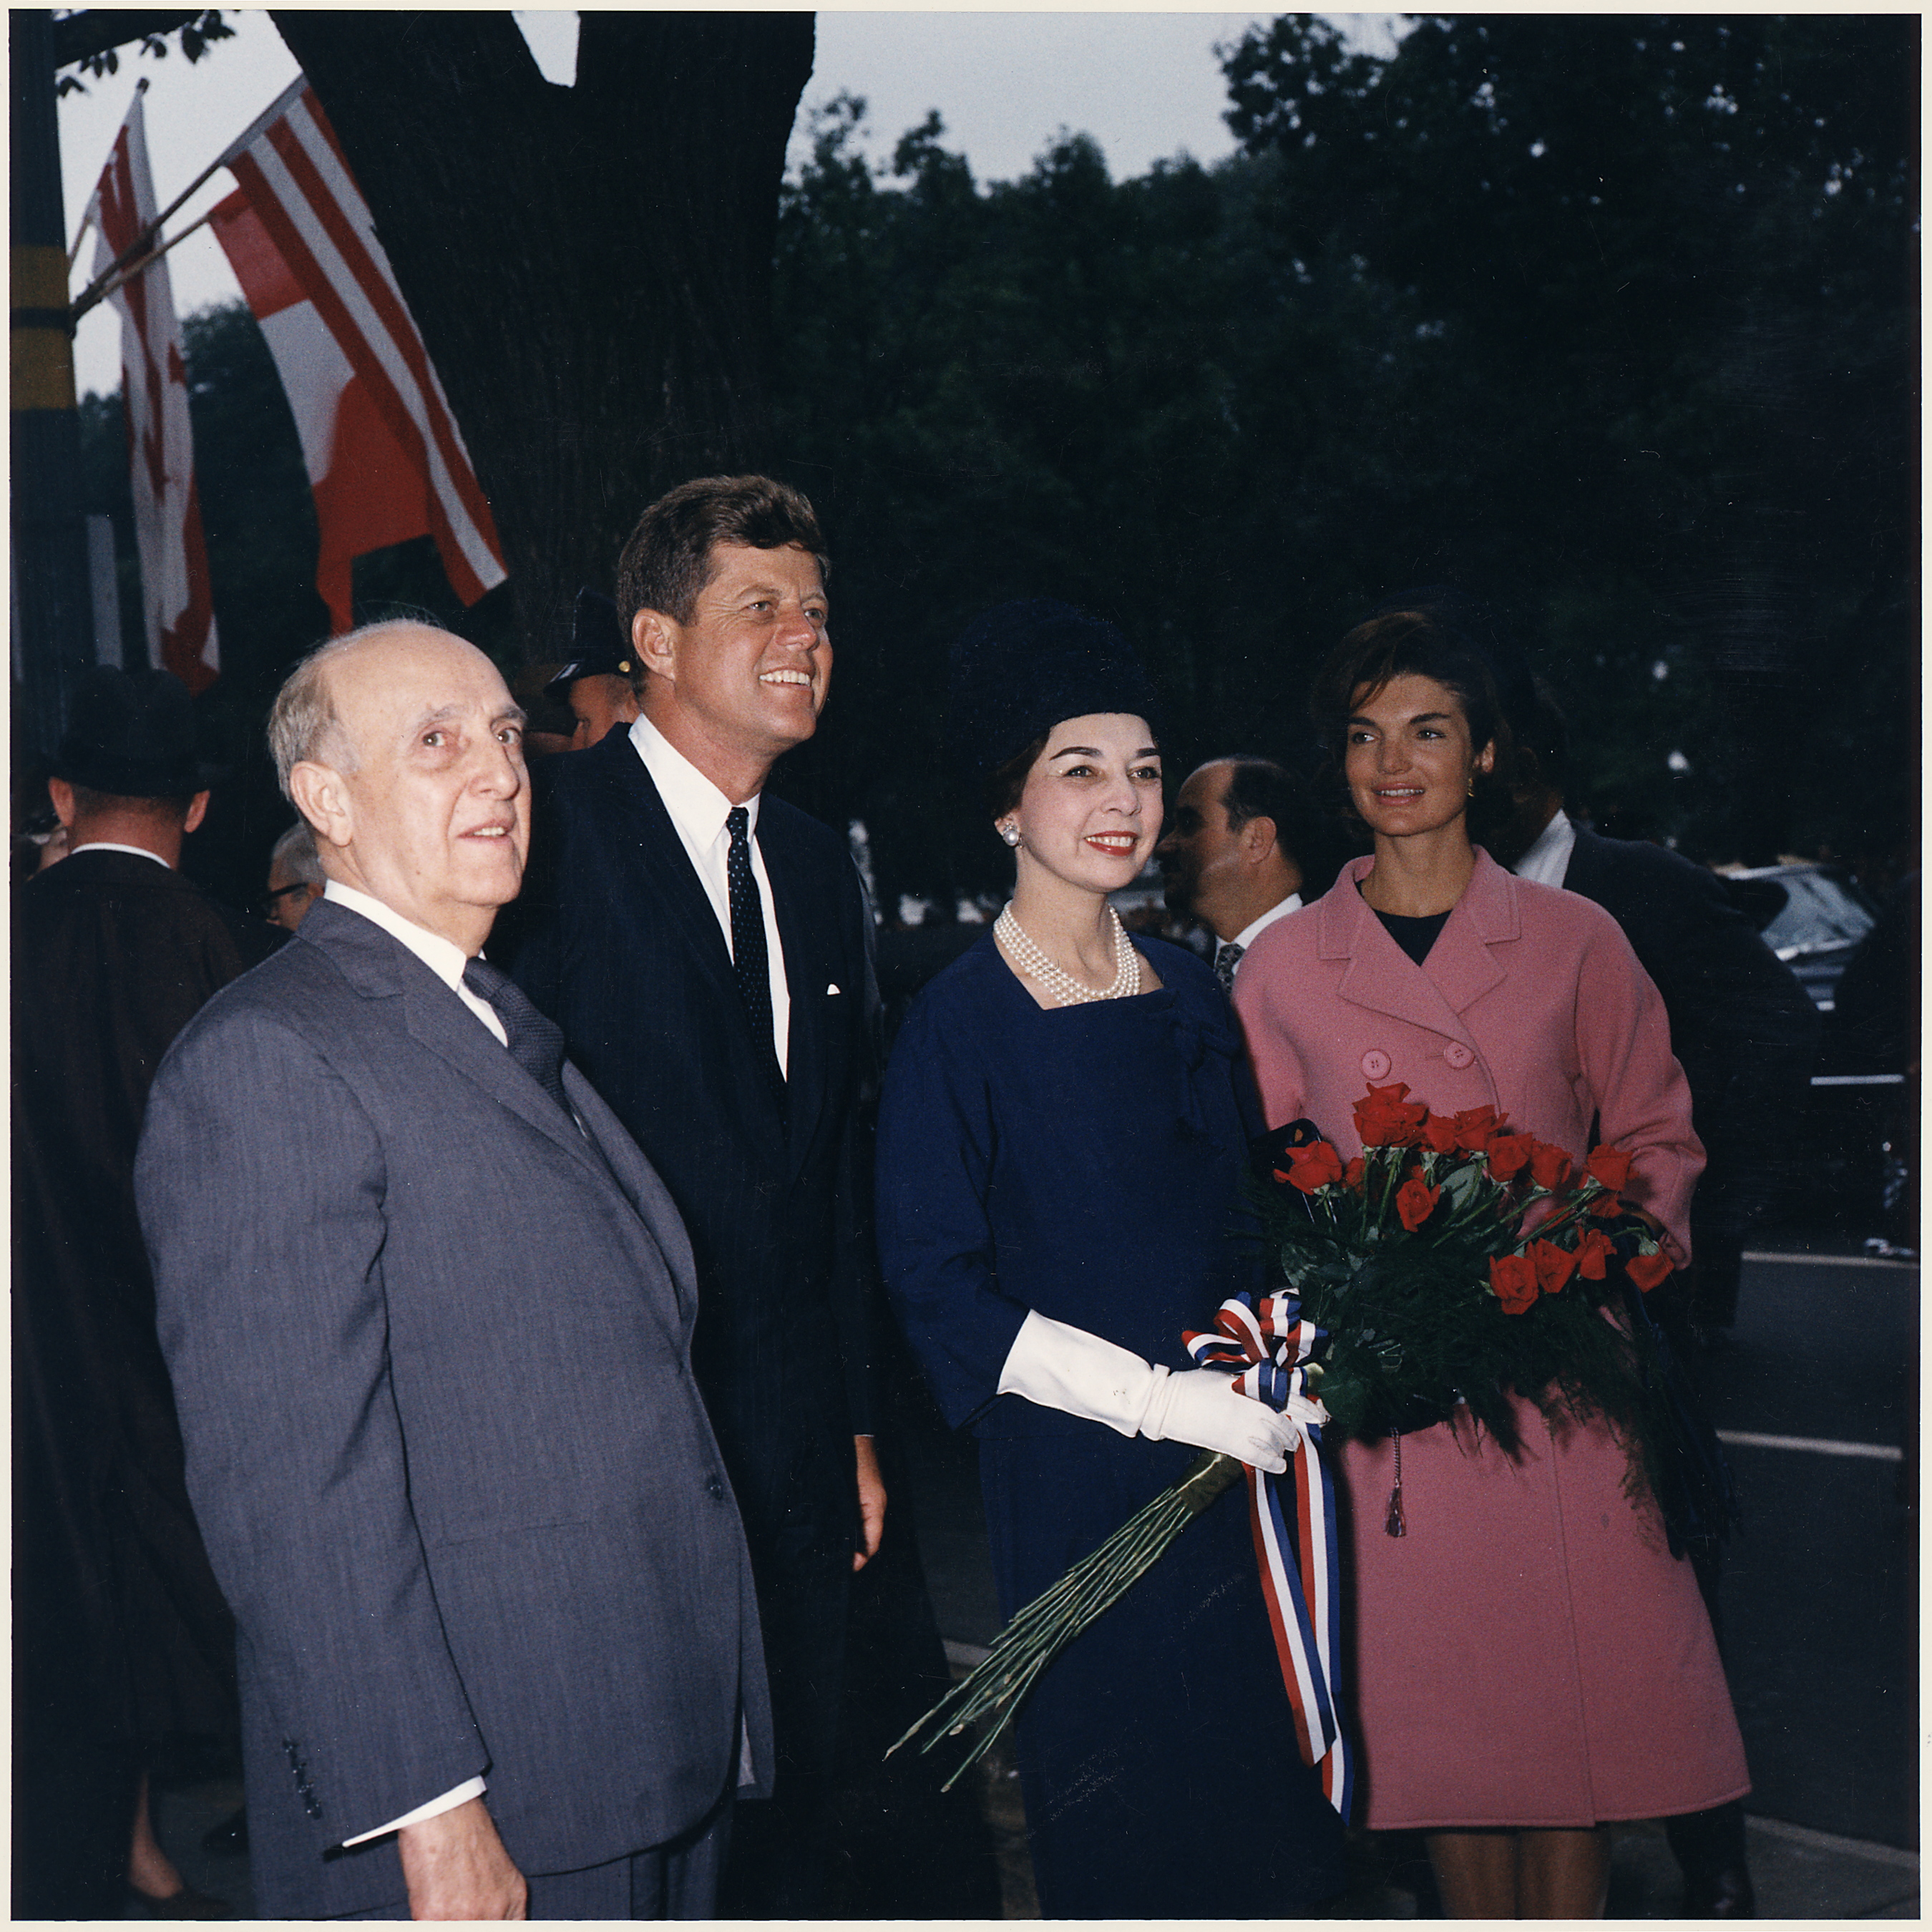 Arrival ceremonies for the President of Peru. President Don Manuel Prado, President Kennedy, Mrs. Prado, Mrs. Kennedy